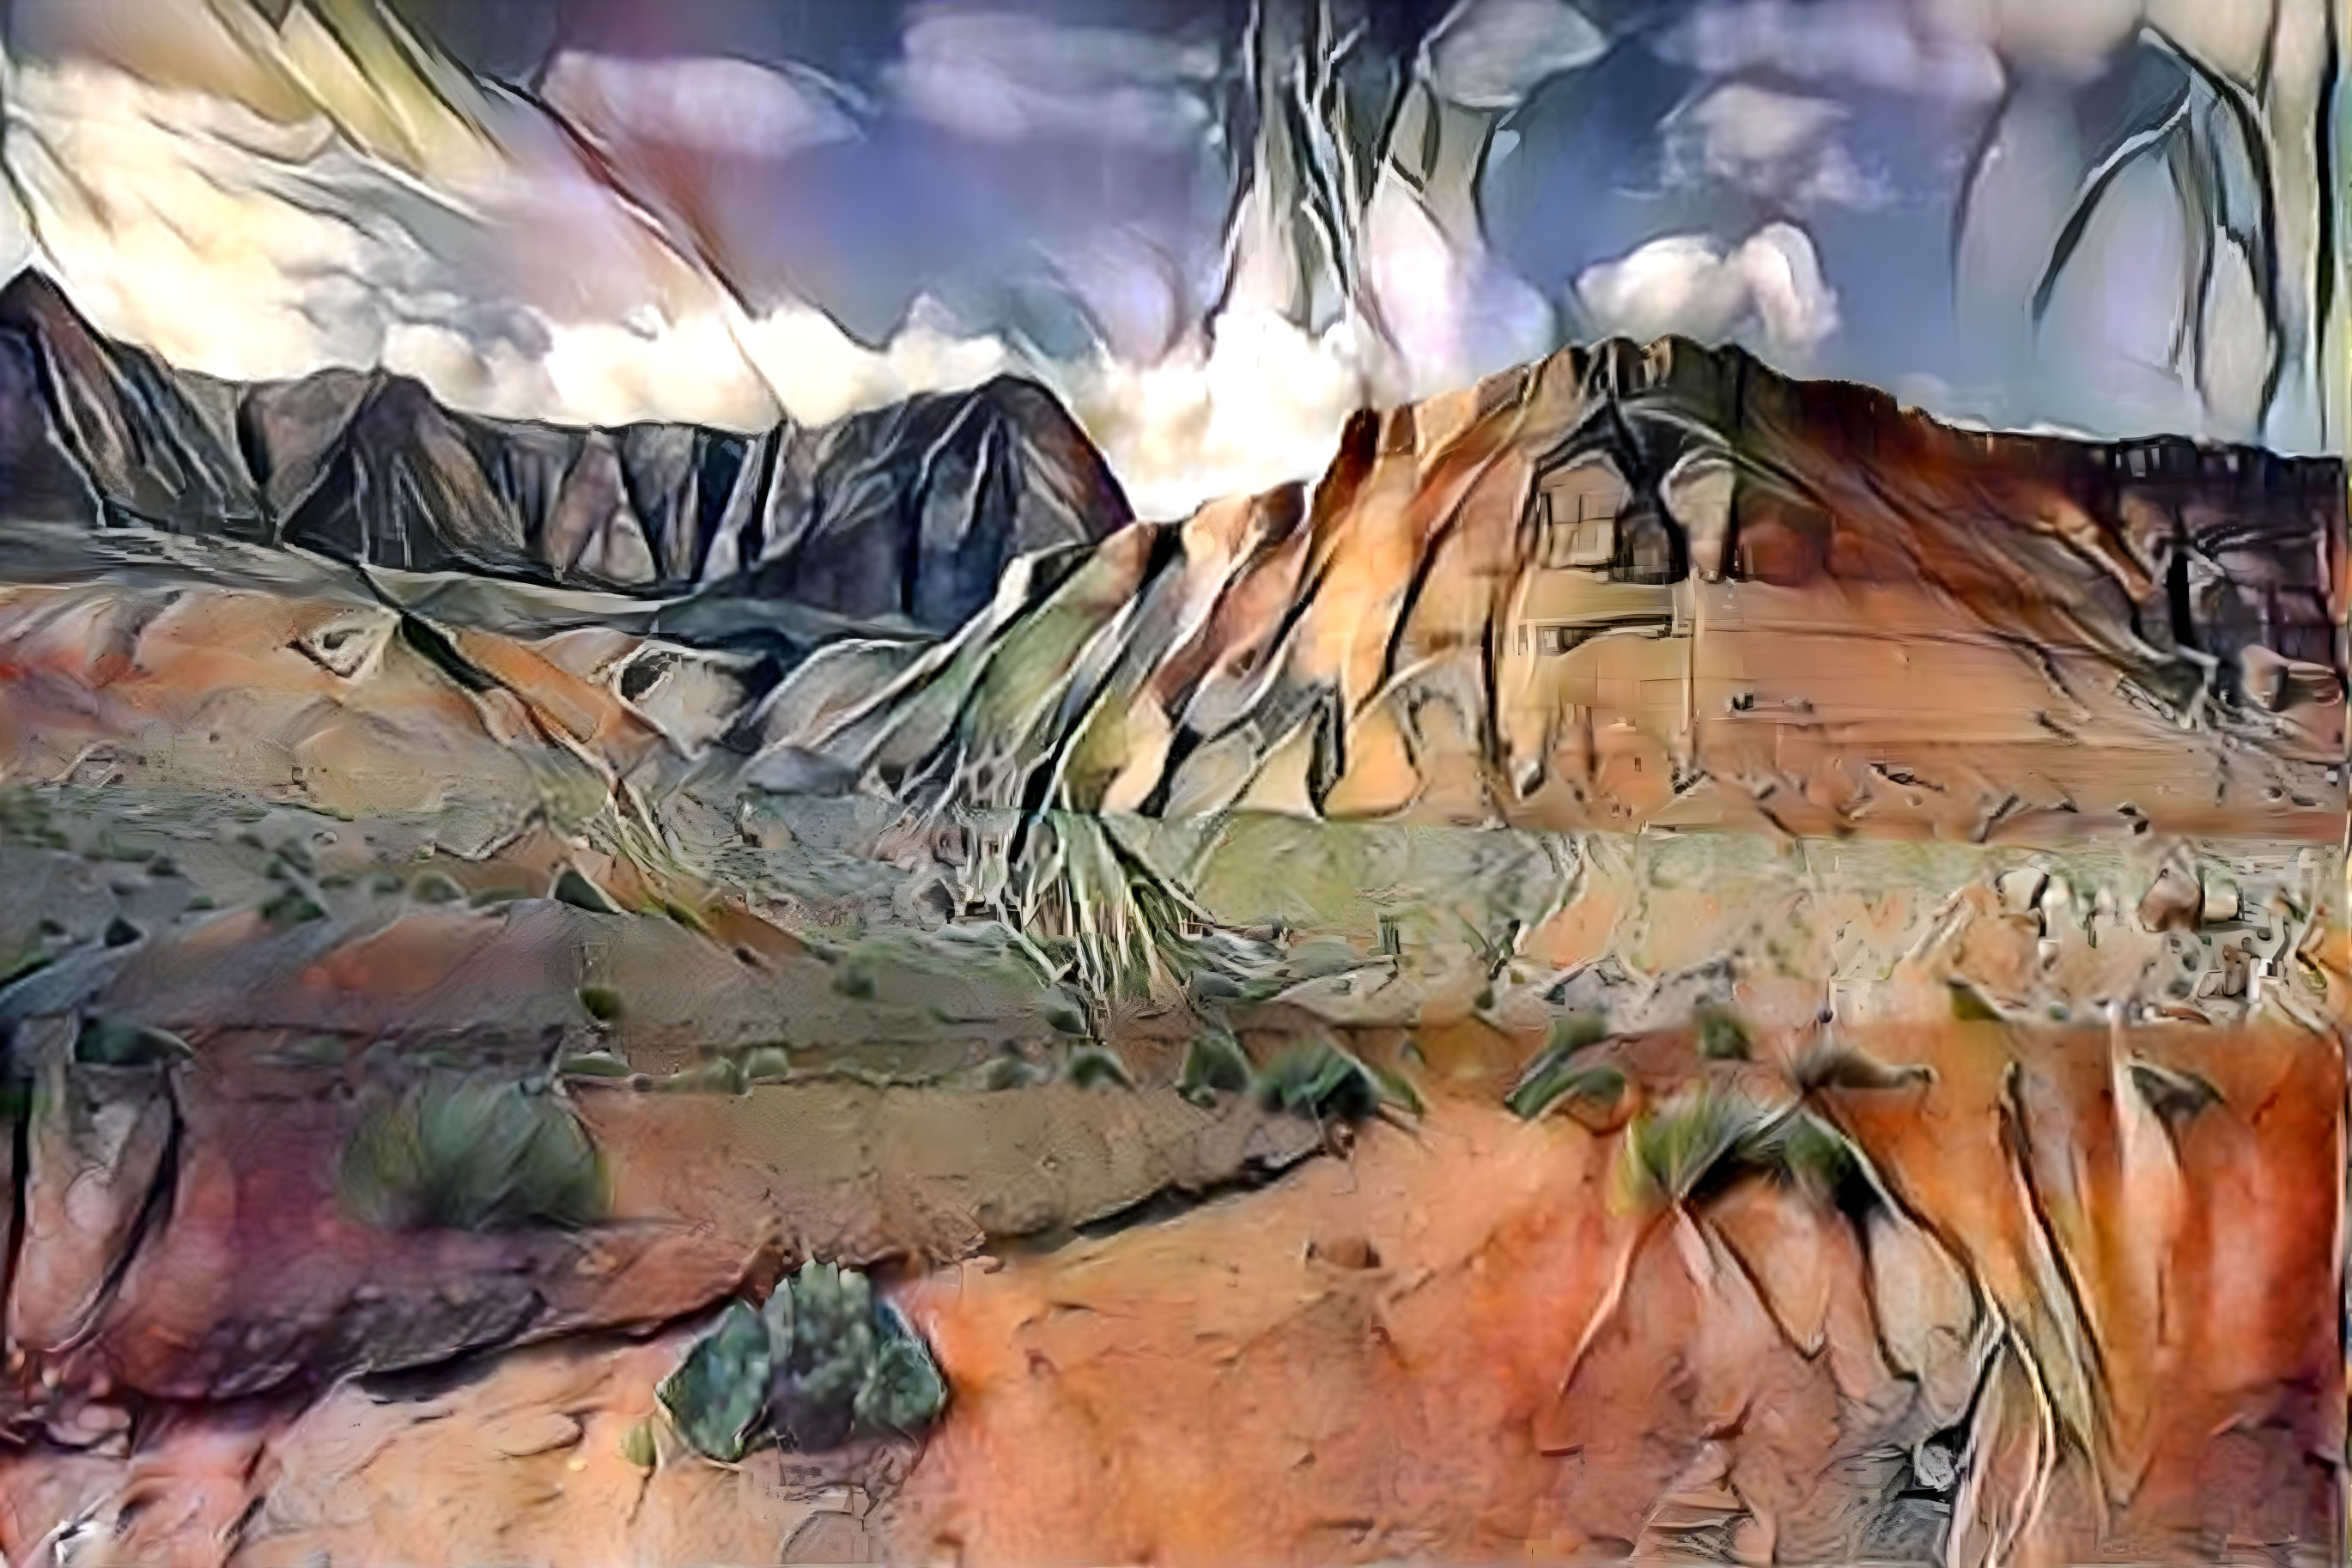 Desert Abstract